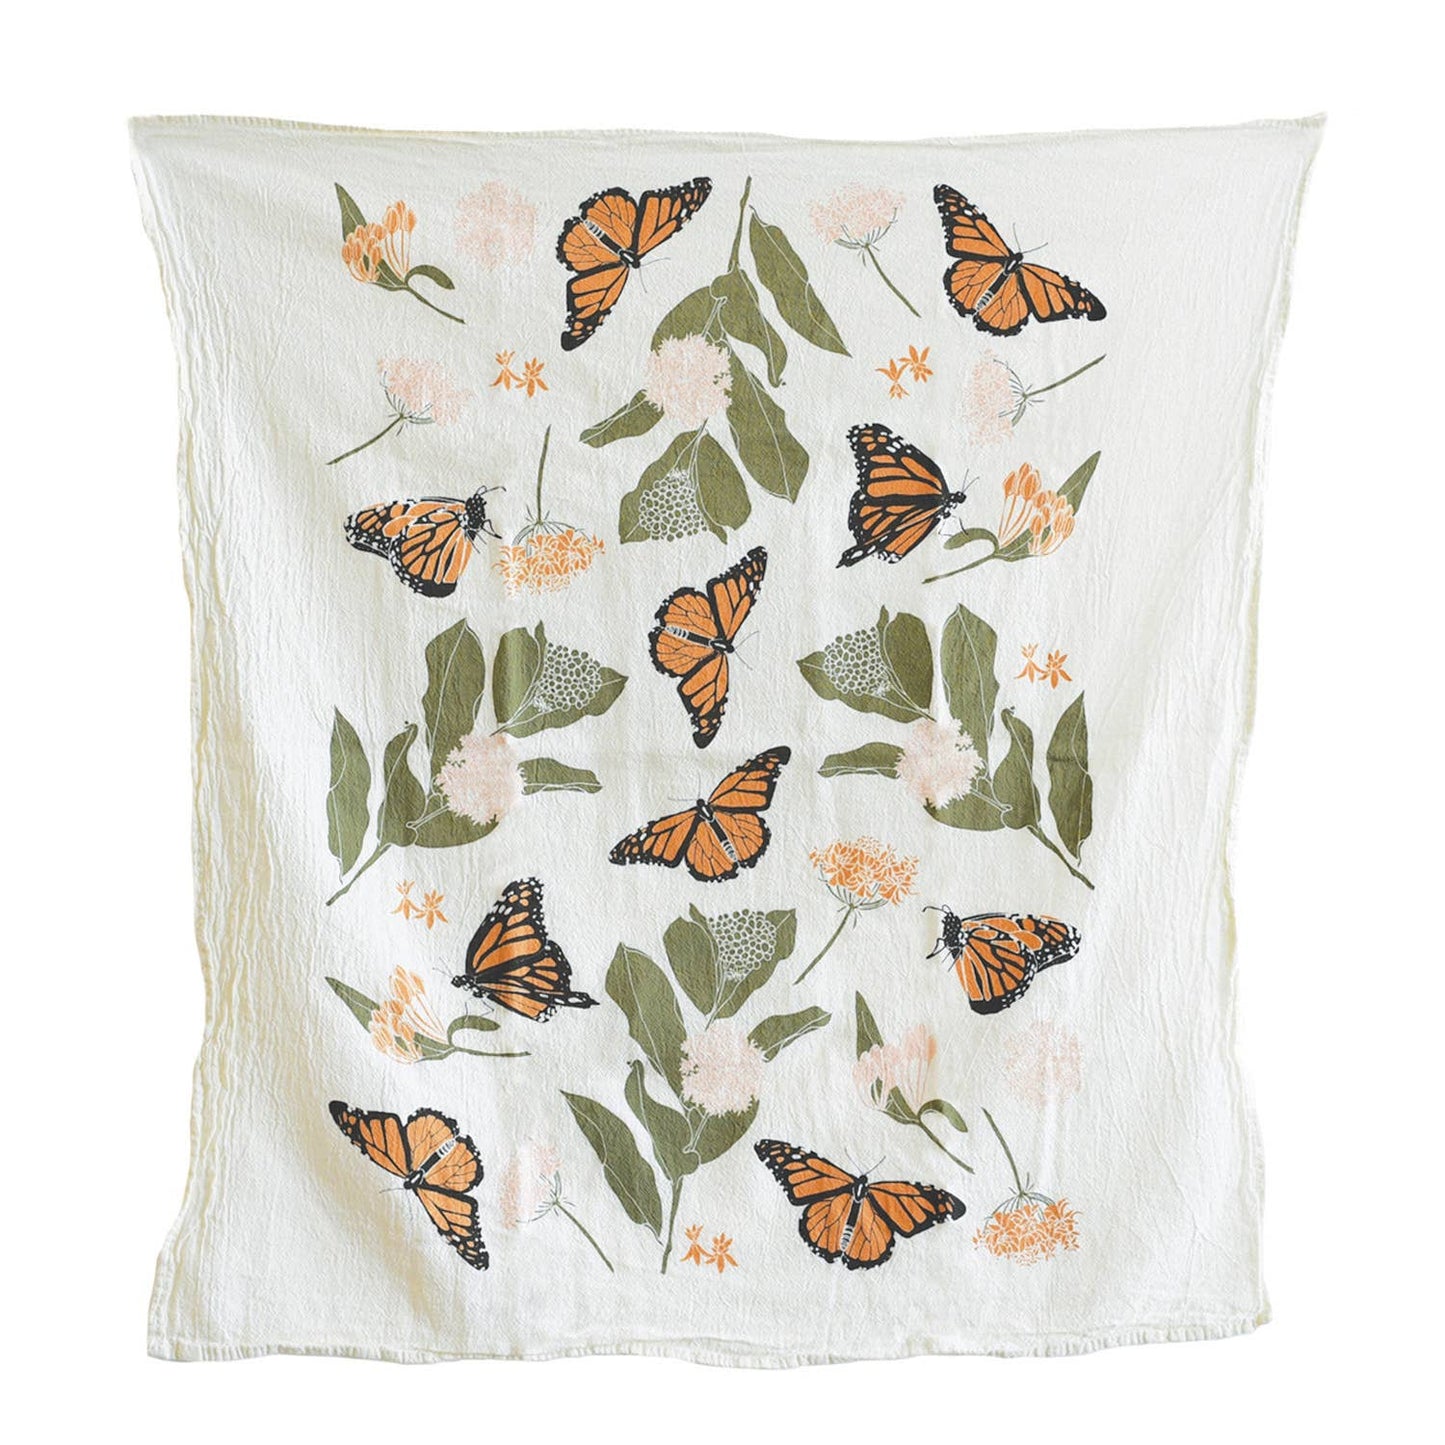 Monarchs and milkweed towel by June & December